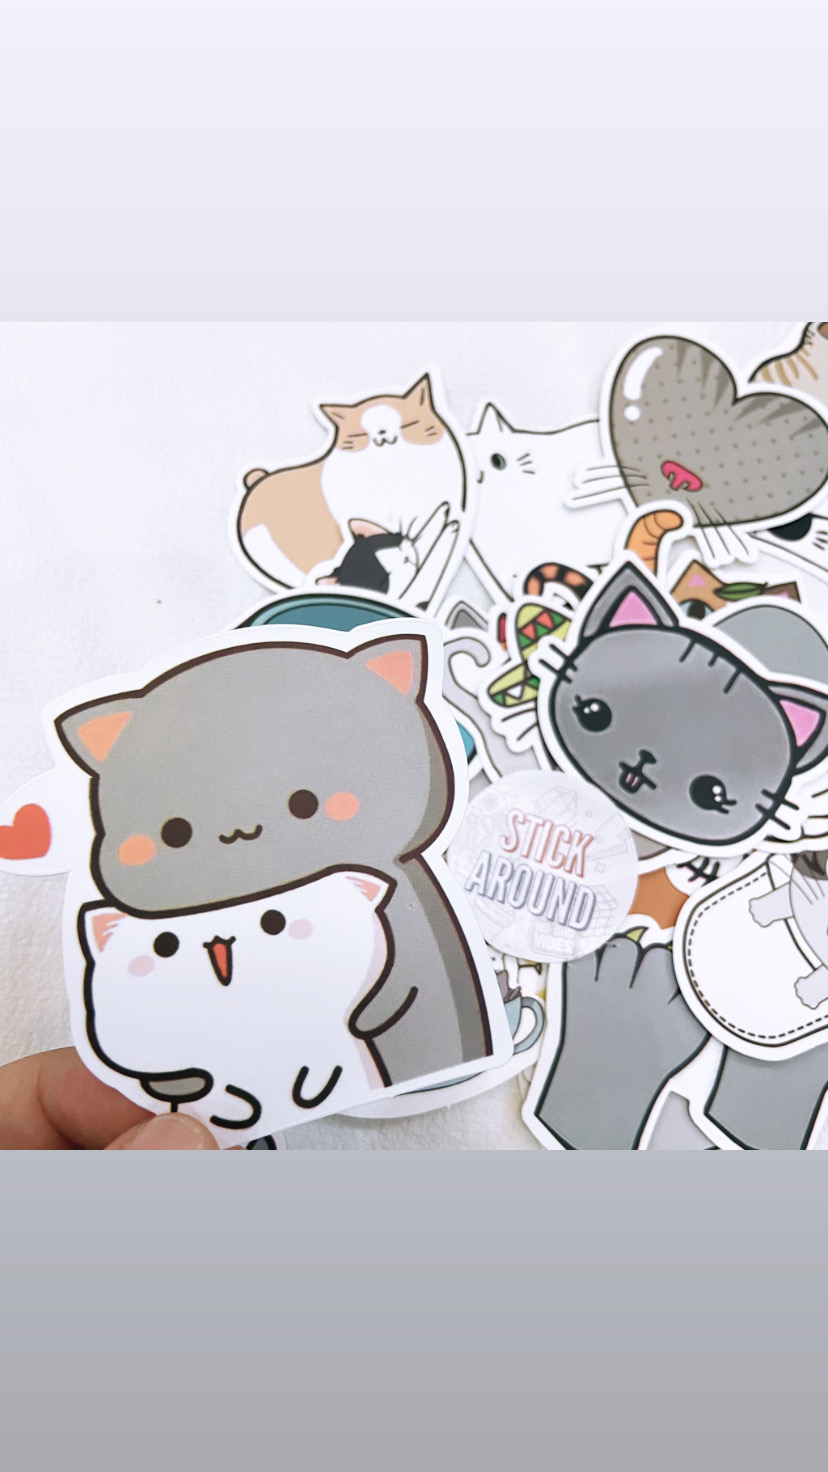 Bạn muốn gắn những sticker đáng yêu lên các vật dụng của mình? Hãy đến với bộ sưu tập hình dán mèo dễ thương của chúng tôi - những chú mèo sẽ làm bạn thích thú với những hình ảnh đáng yêu này.